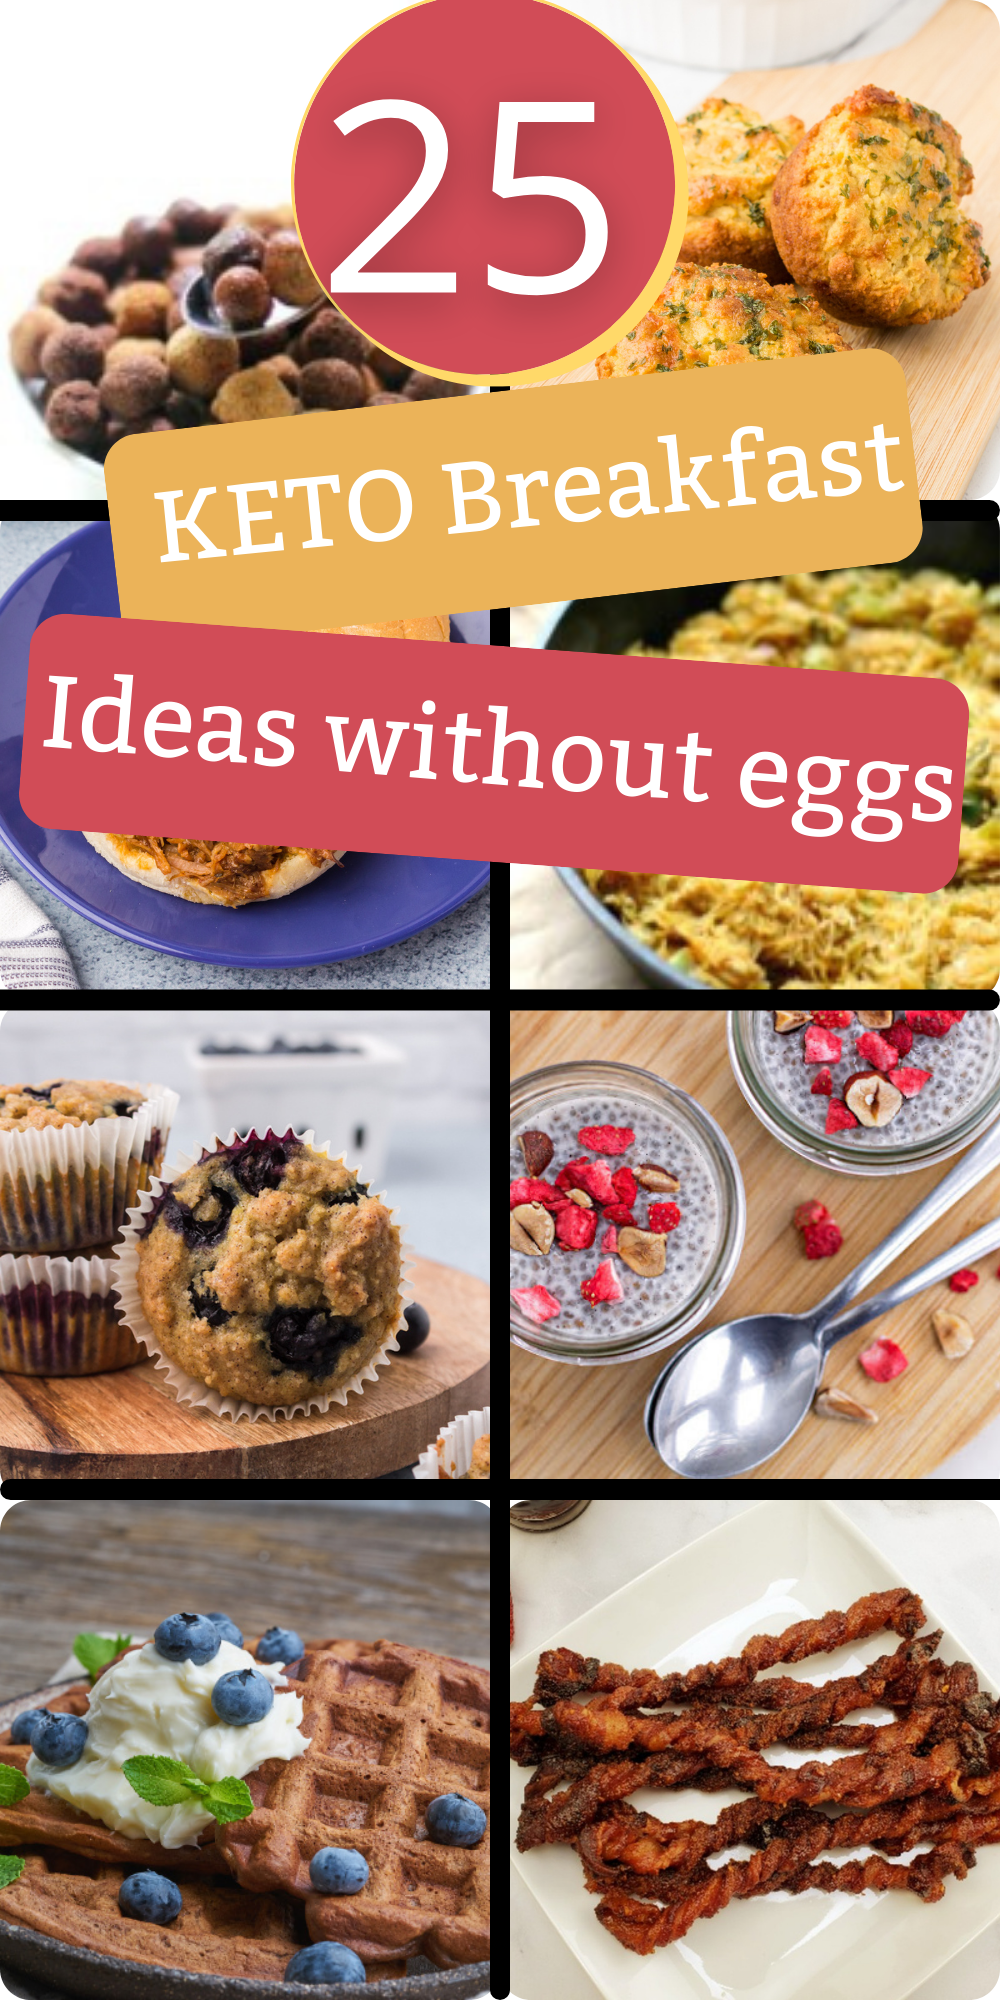 25 keto breakfast ideas